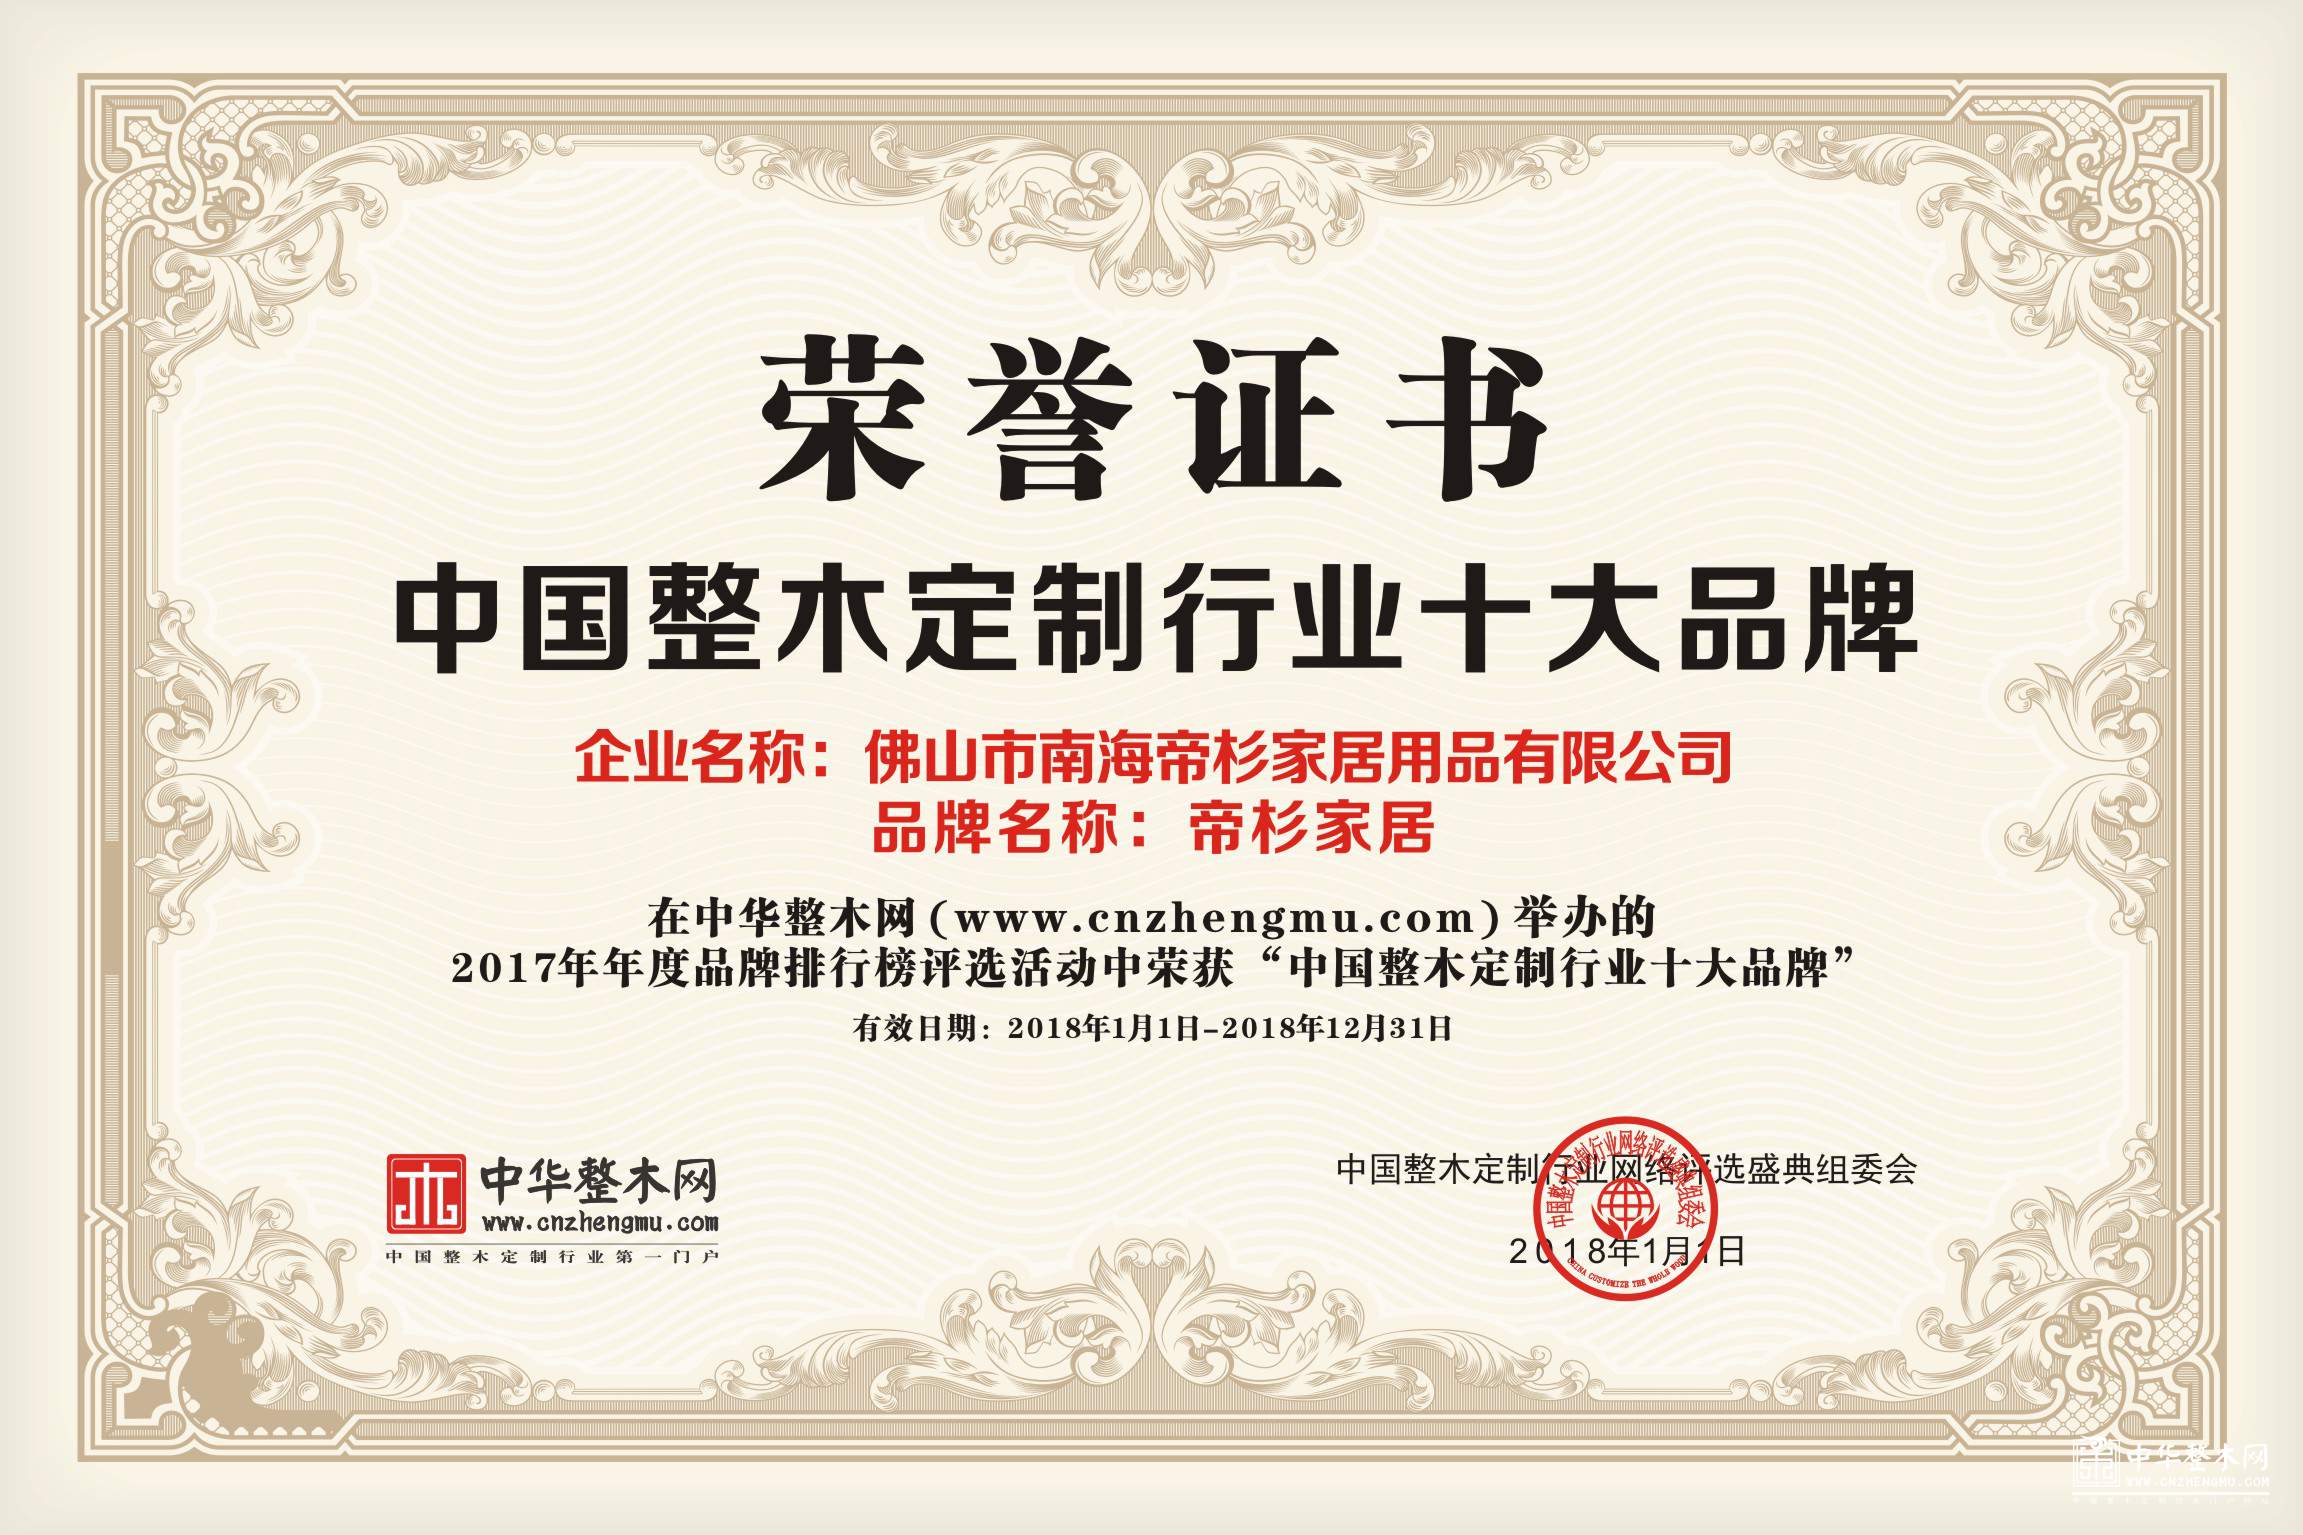 实至名归：帝杉家居荣获2017中国整木定制十大品牌和影响力品牌两项大奖！ 